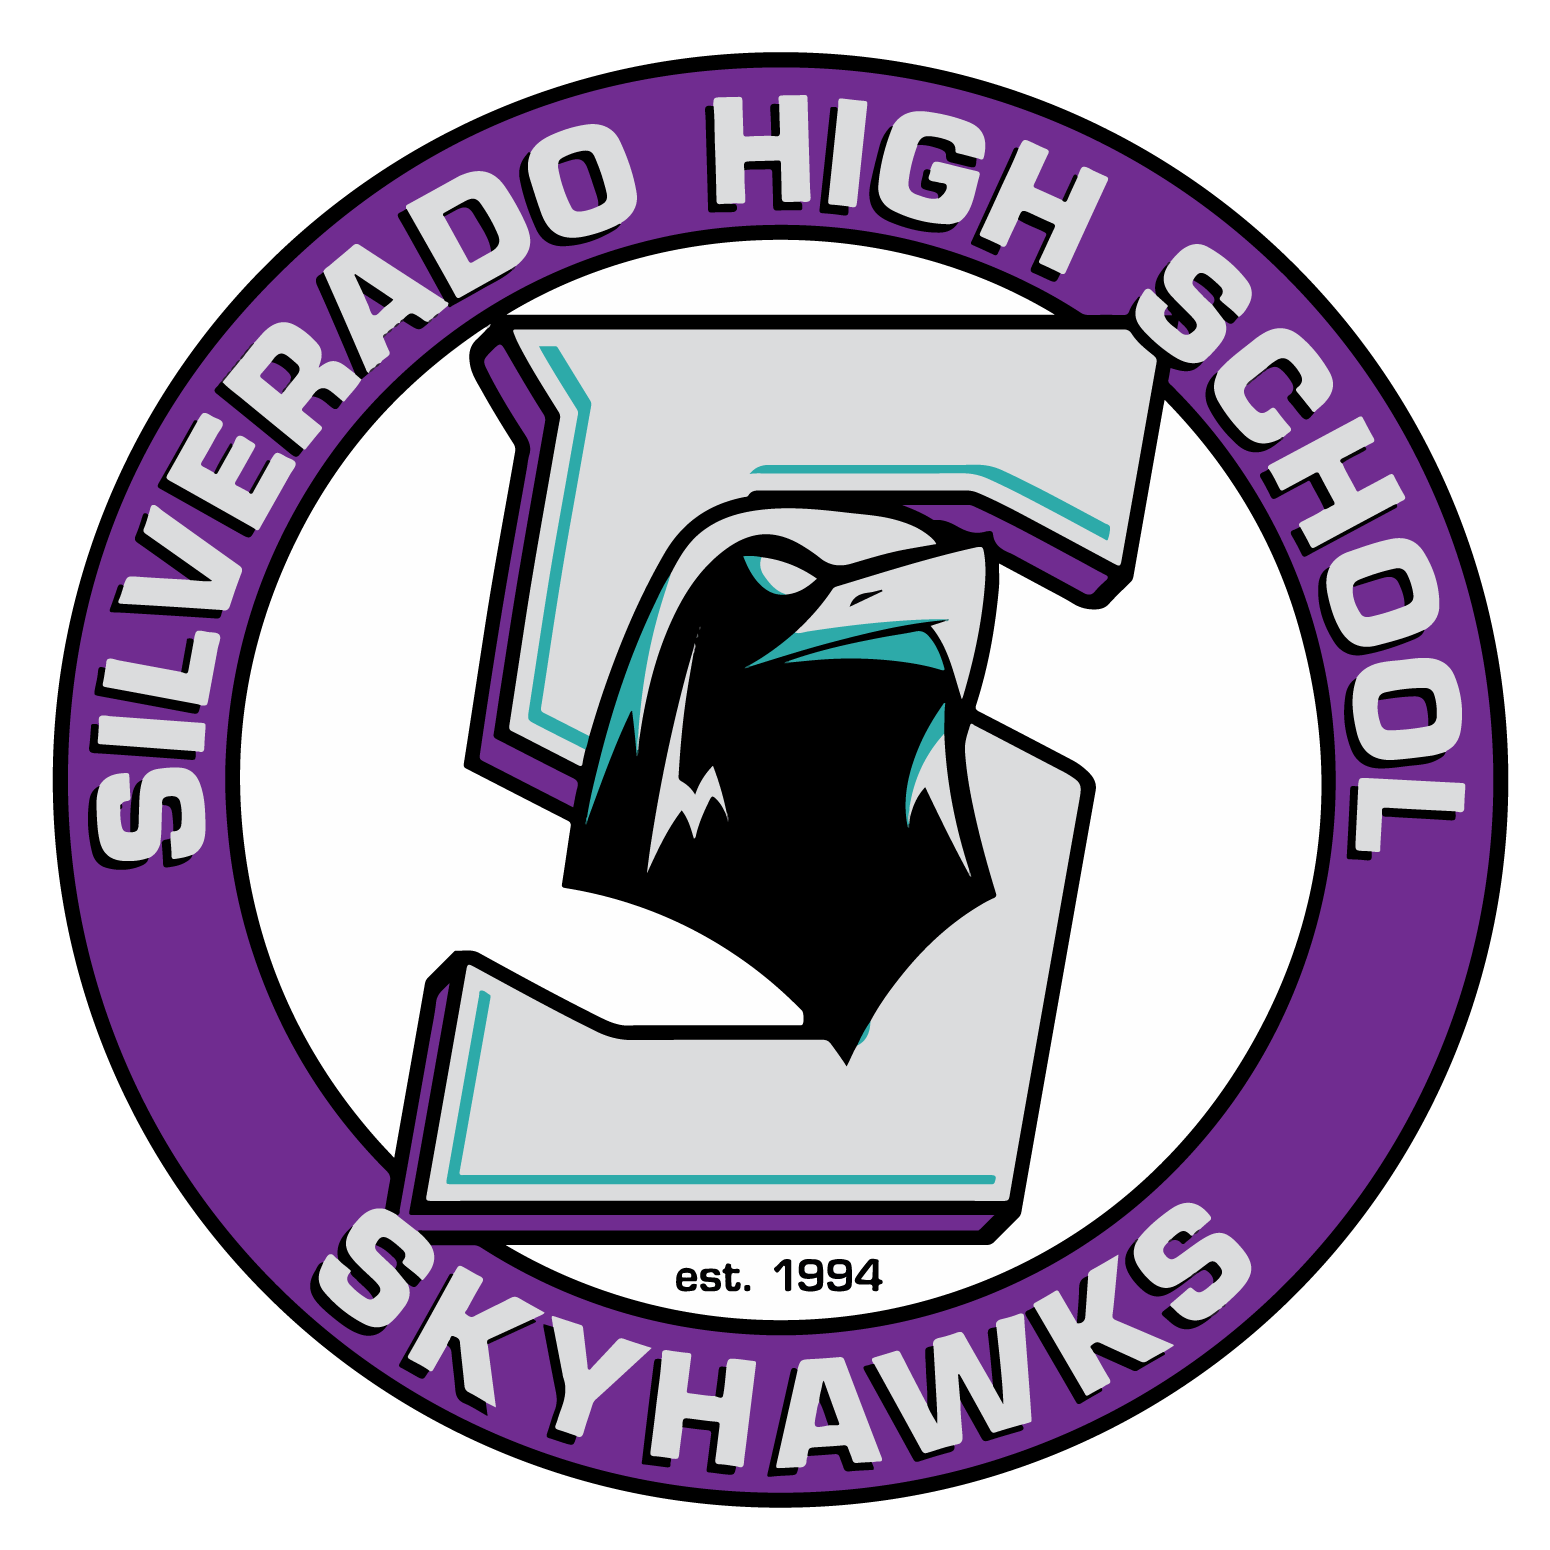 Silverado High School